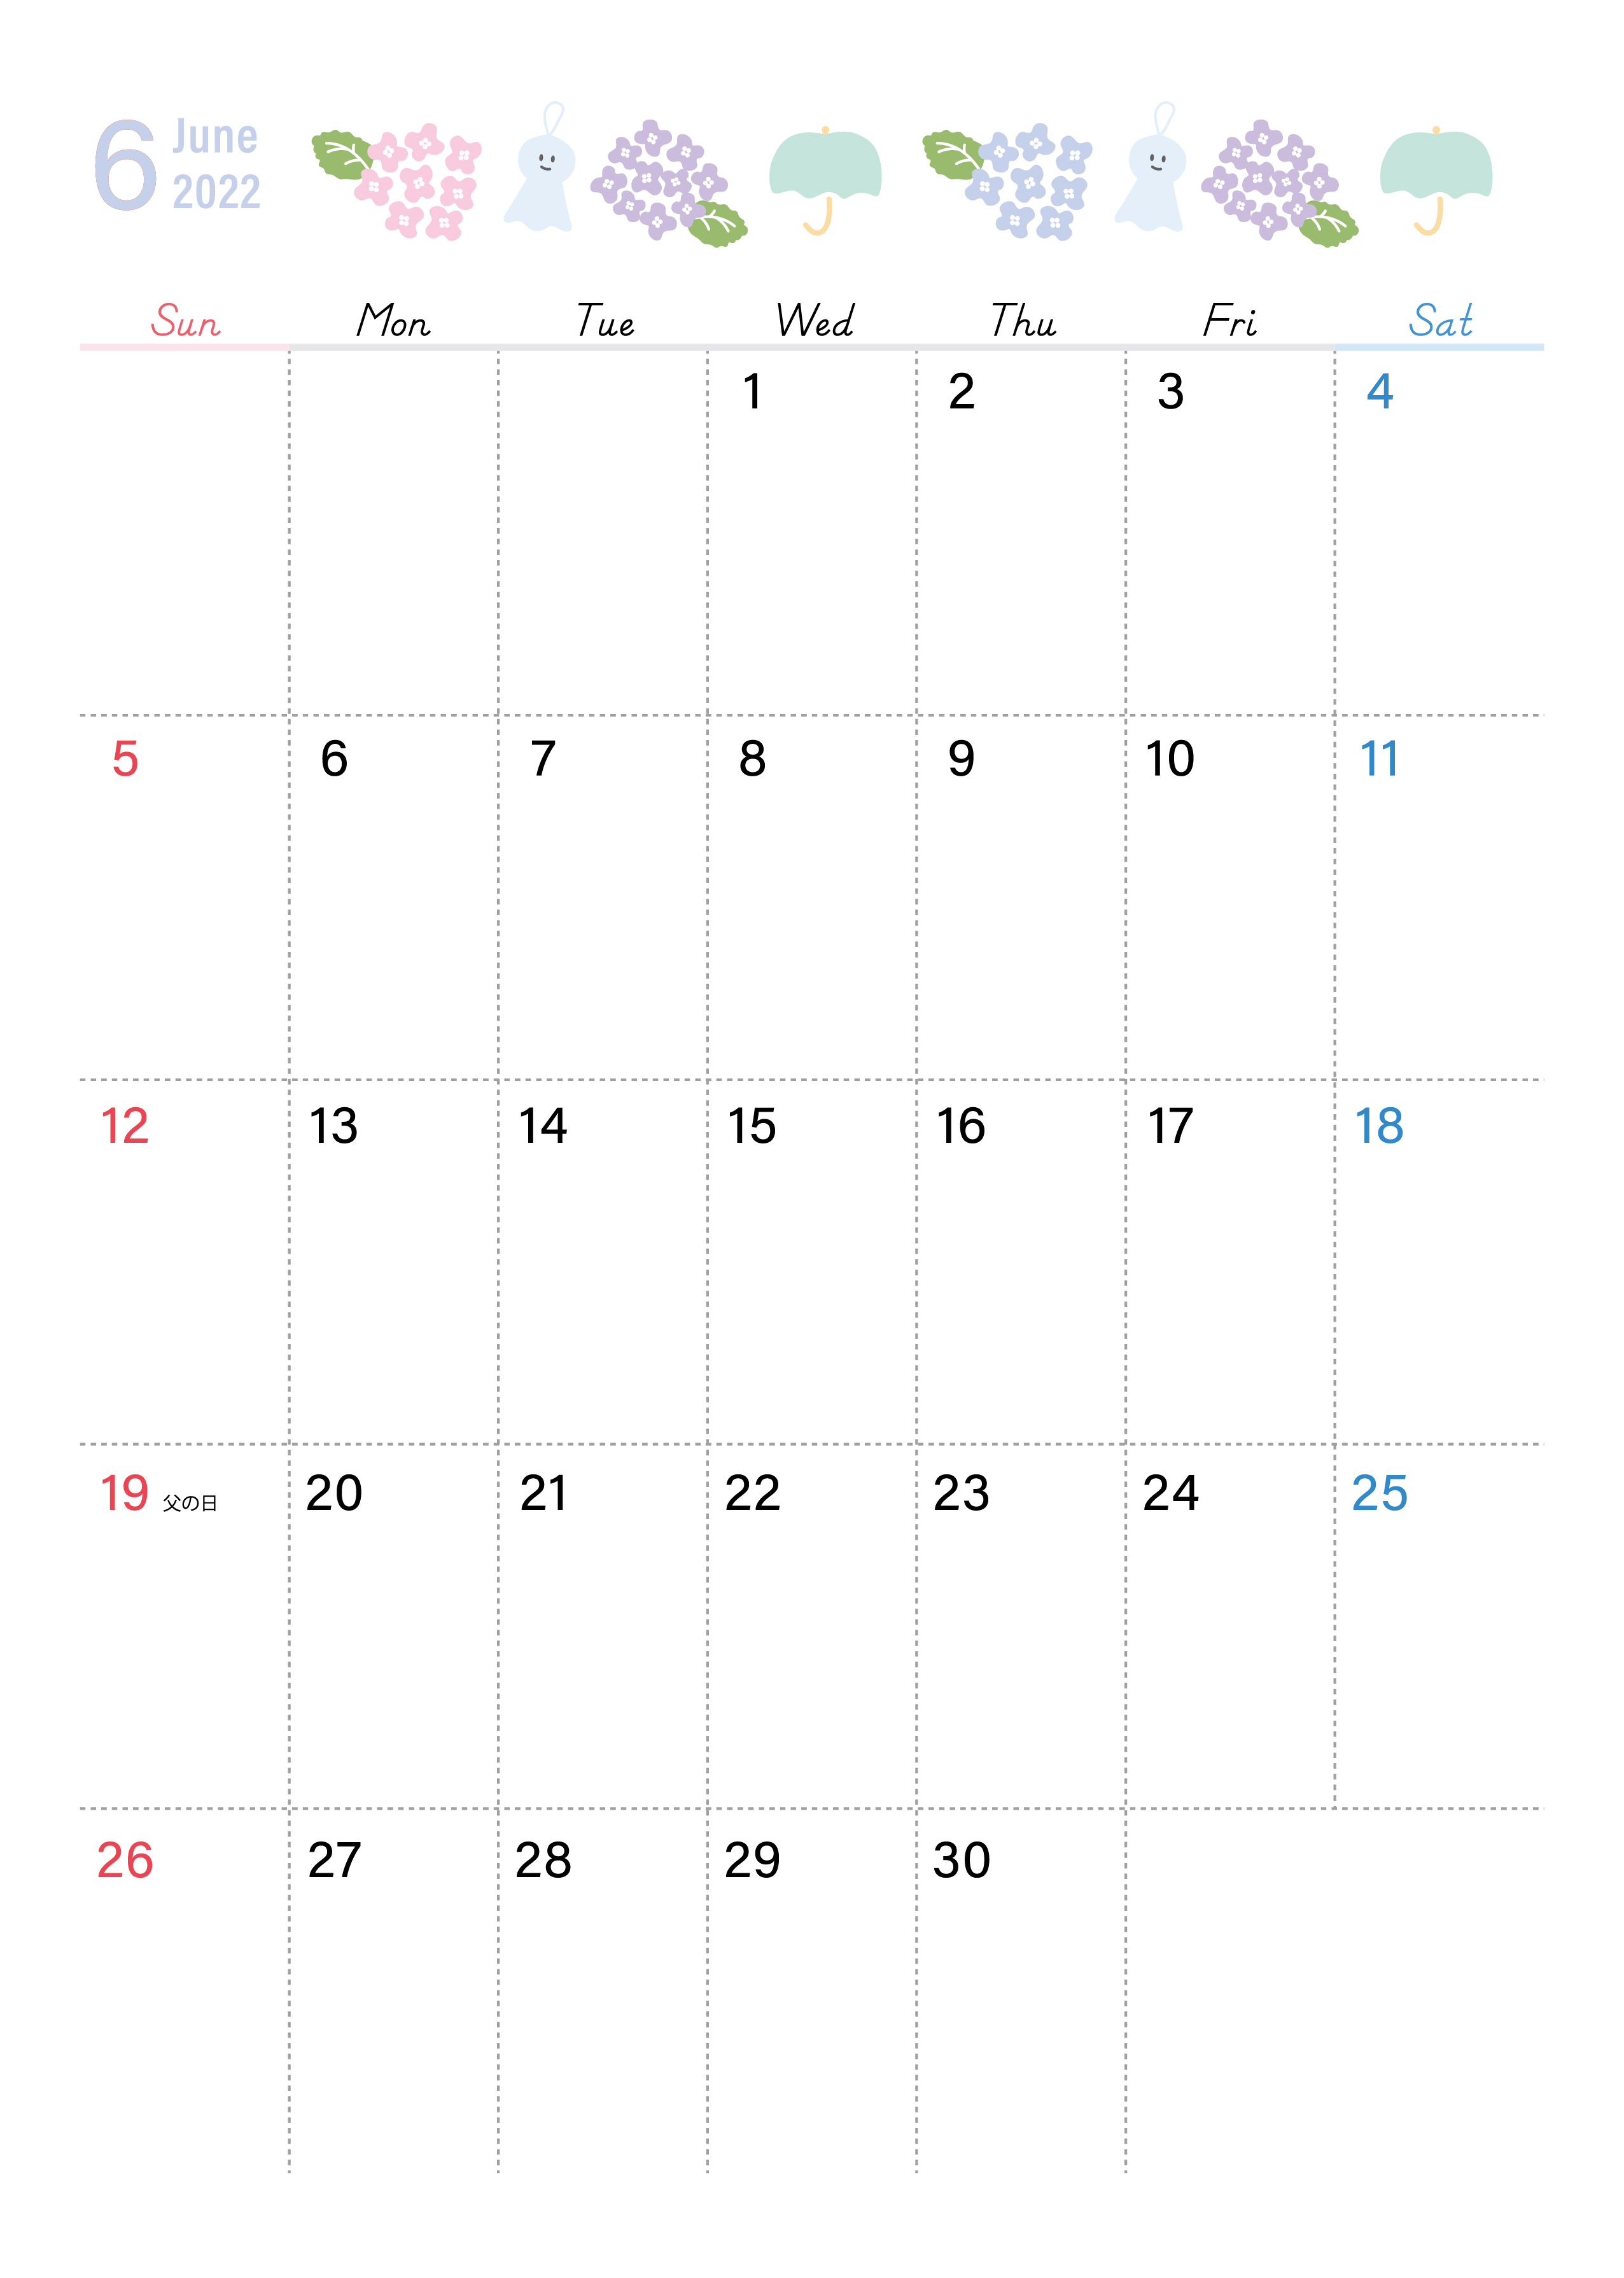 てるてる坊主のシンプルな縦型無料カレンダー 22年6月 はシンプルなので印刷利用が簡単 素材デザイン王